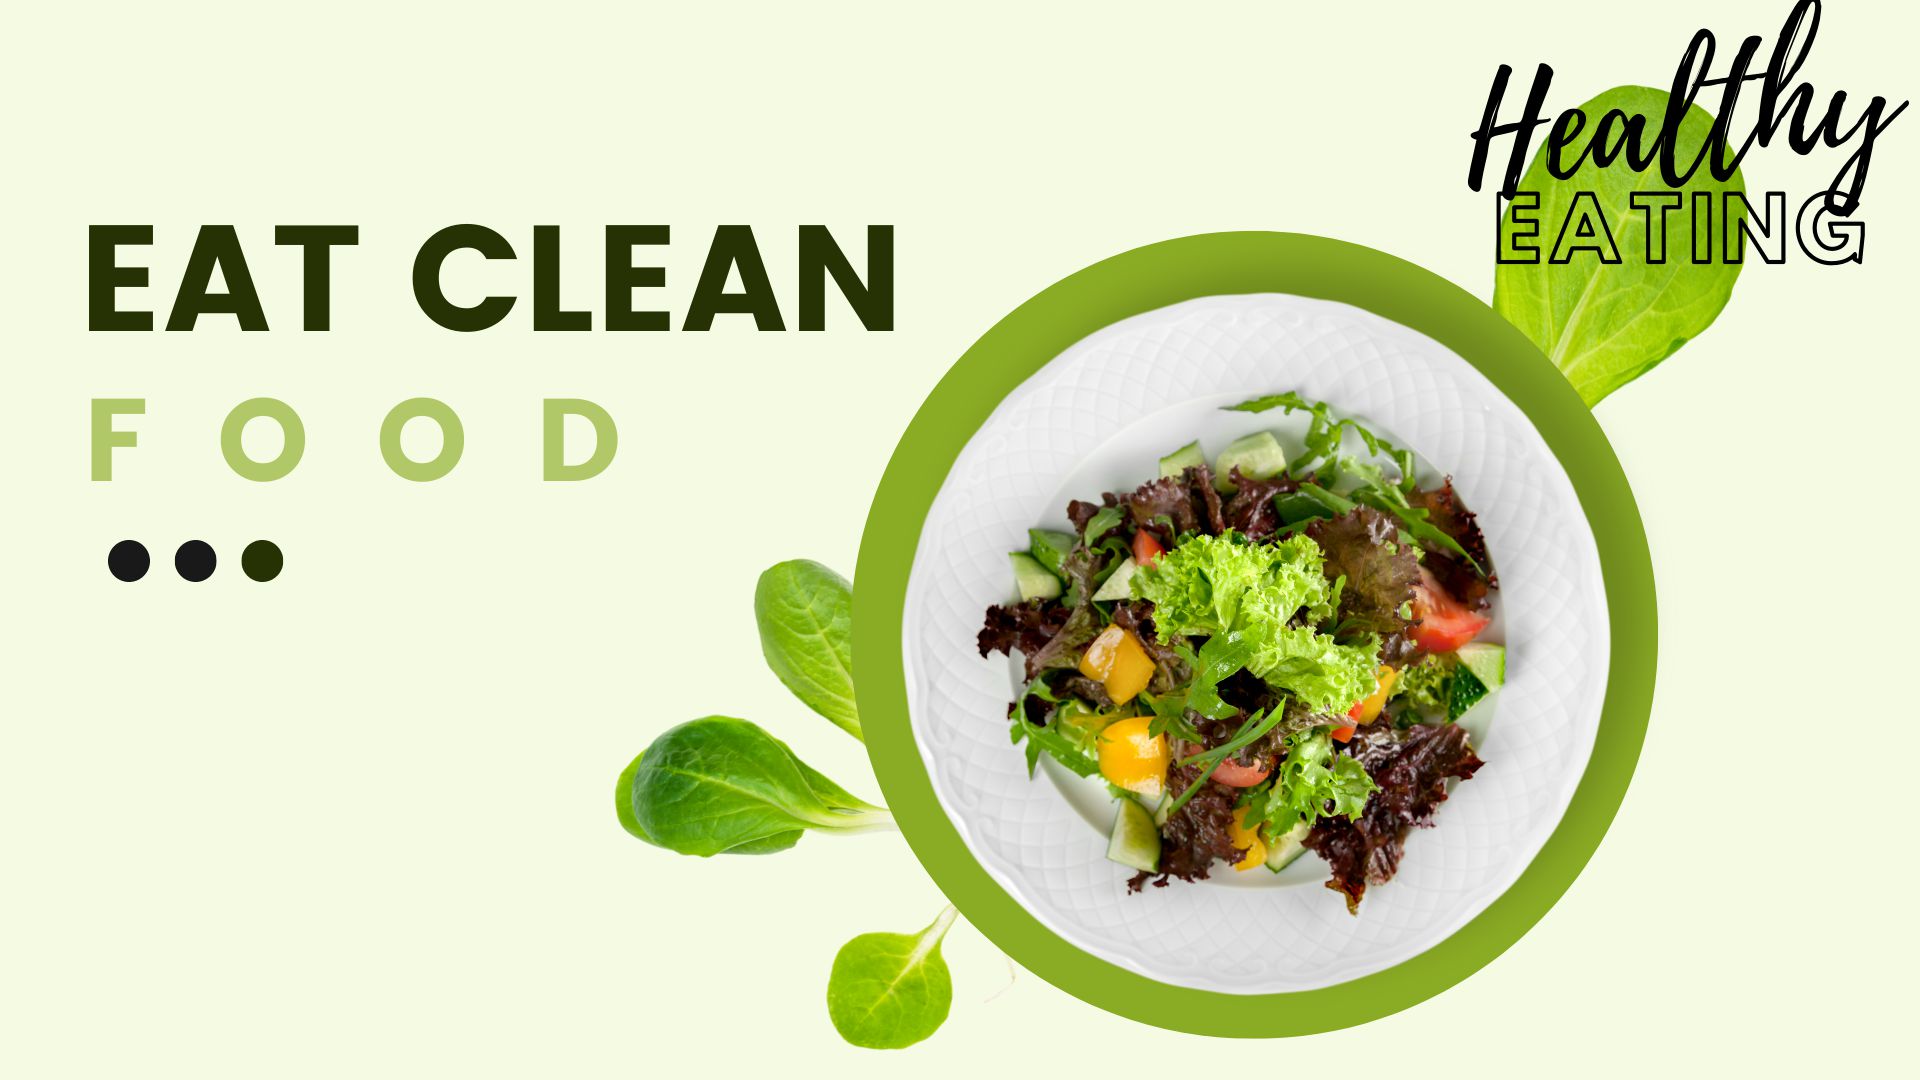 Mua Eat Clean TPHCM ở đâu ngon, giá rẻ, đảm bảo chất lượng nhất? - Bếp ăn  giảm cân Eat Clean - Healthy Eating